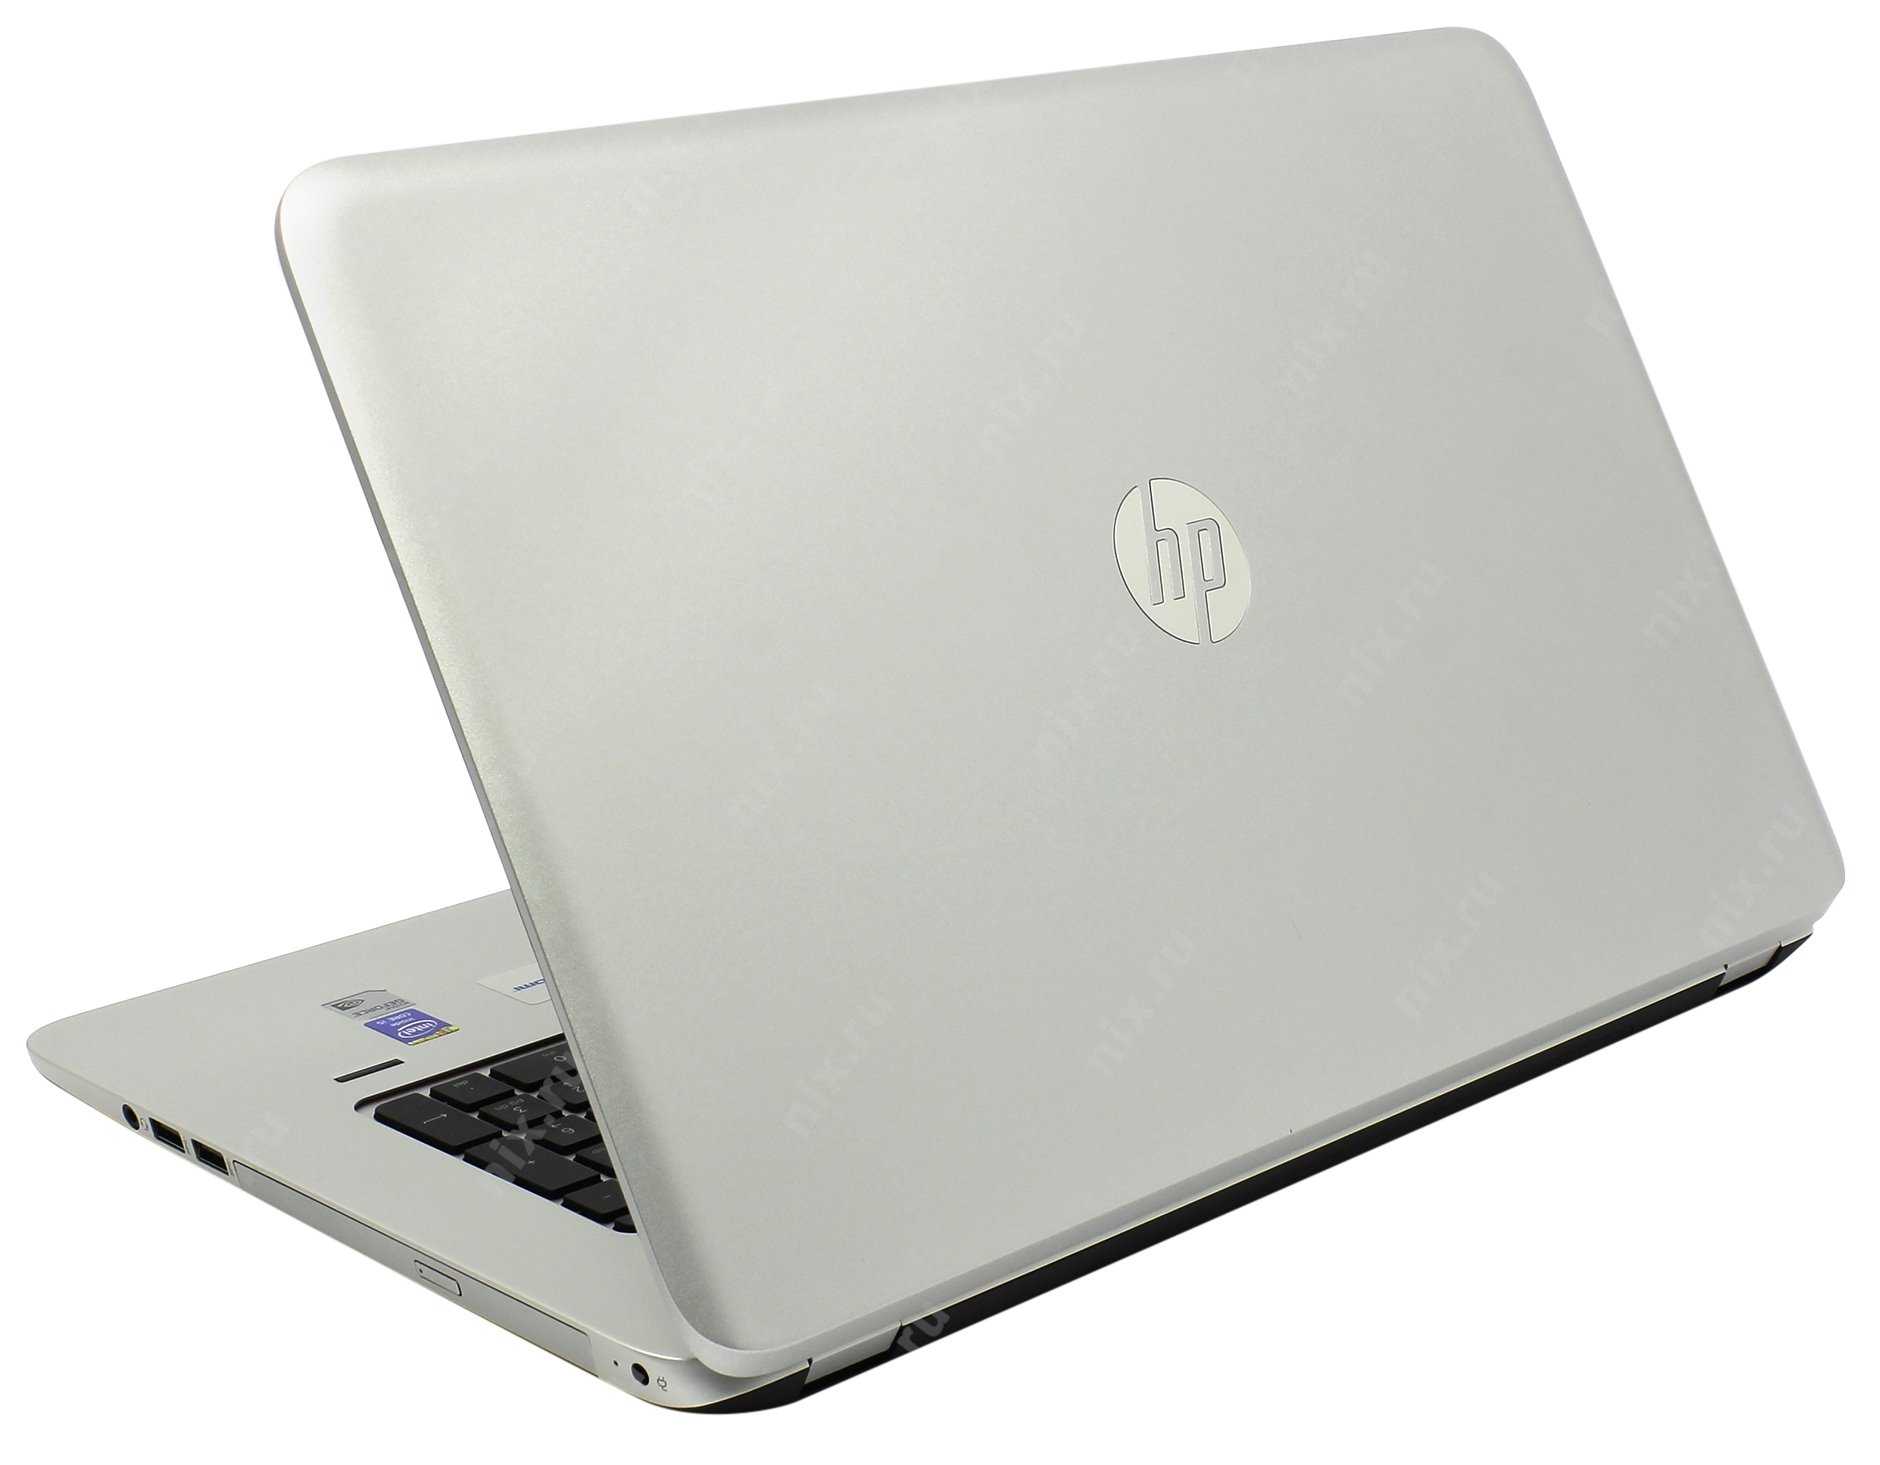 Ноутбук hp envy 17-j018sr — купить, цена и характеристики, отзывы